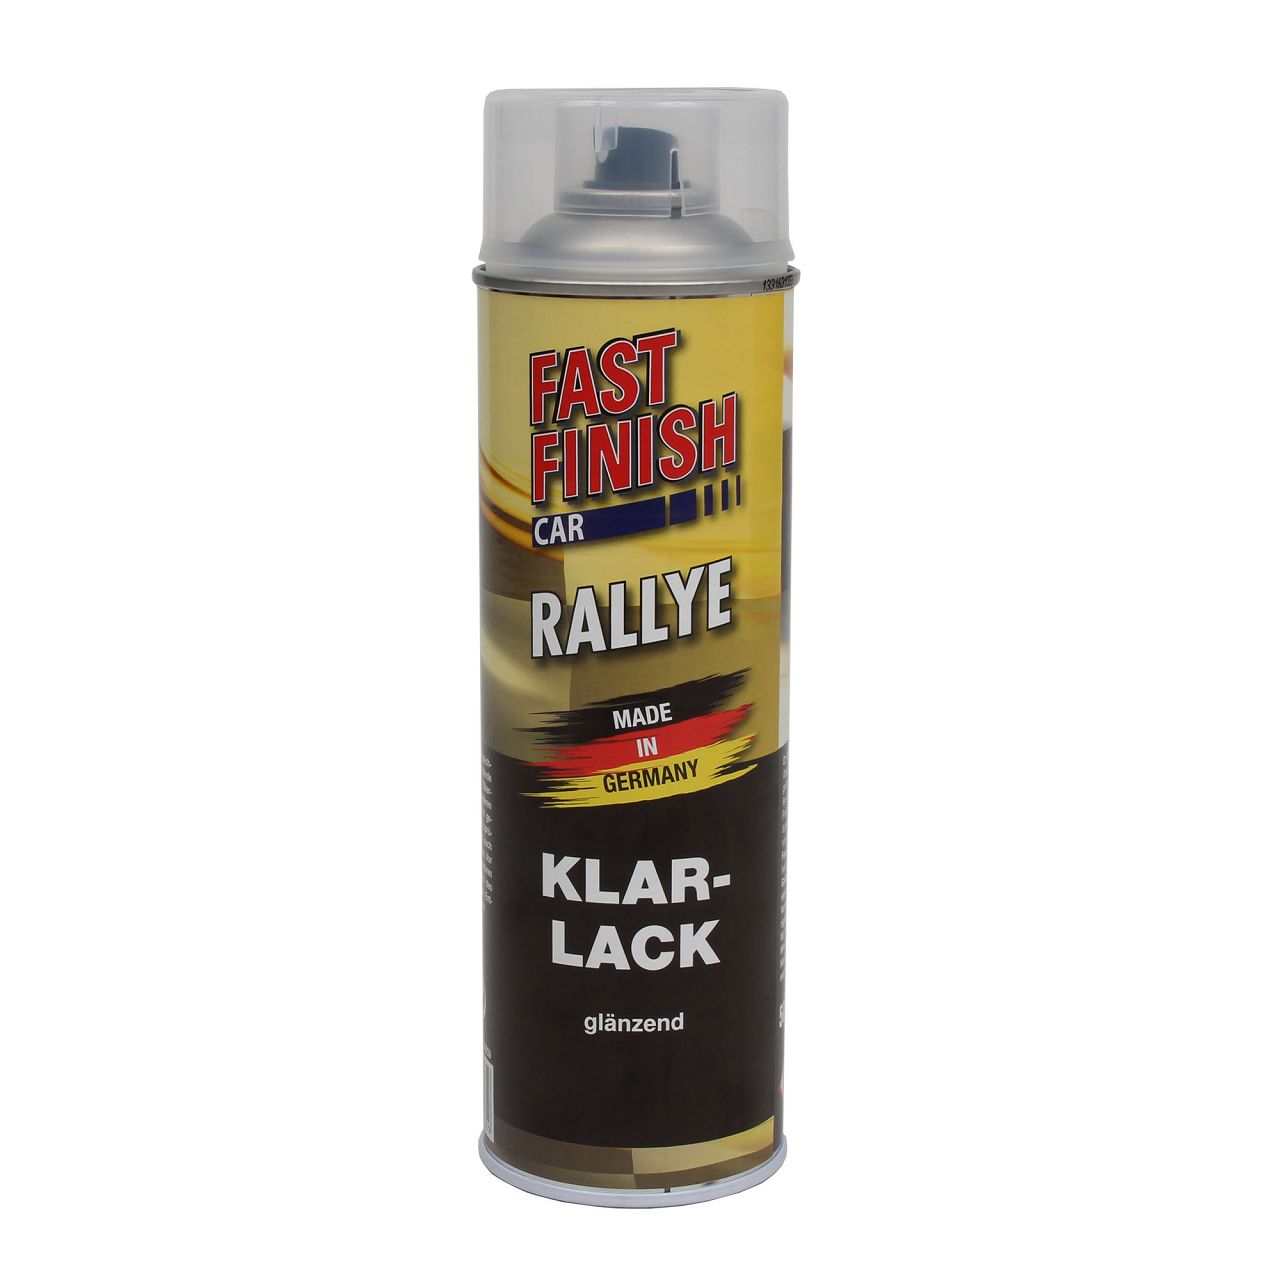 3x 500 ml FAST FINISH Car Rallye Klarlack Lackspray glänzend Spraydose 292859